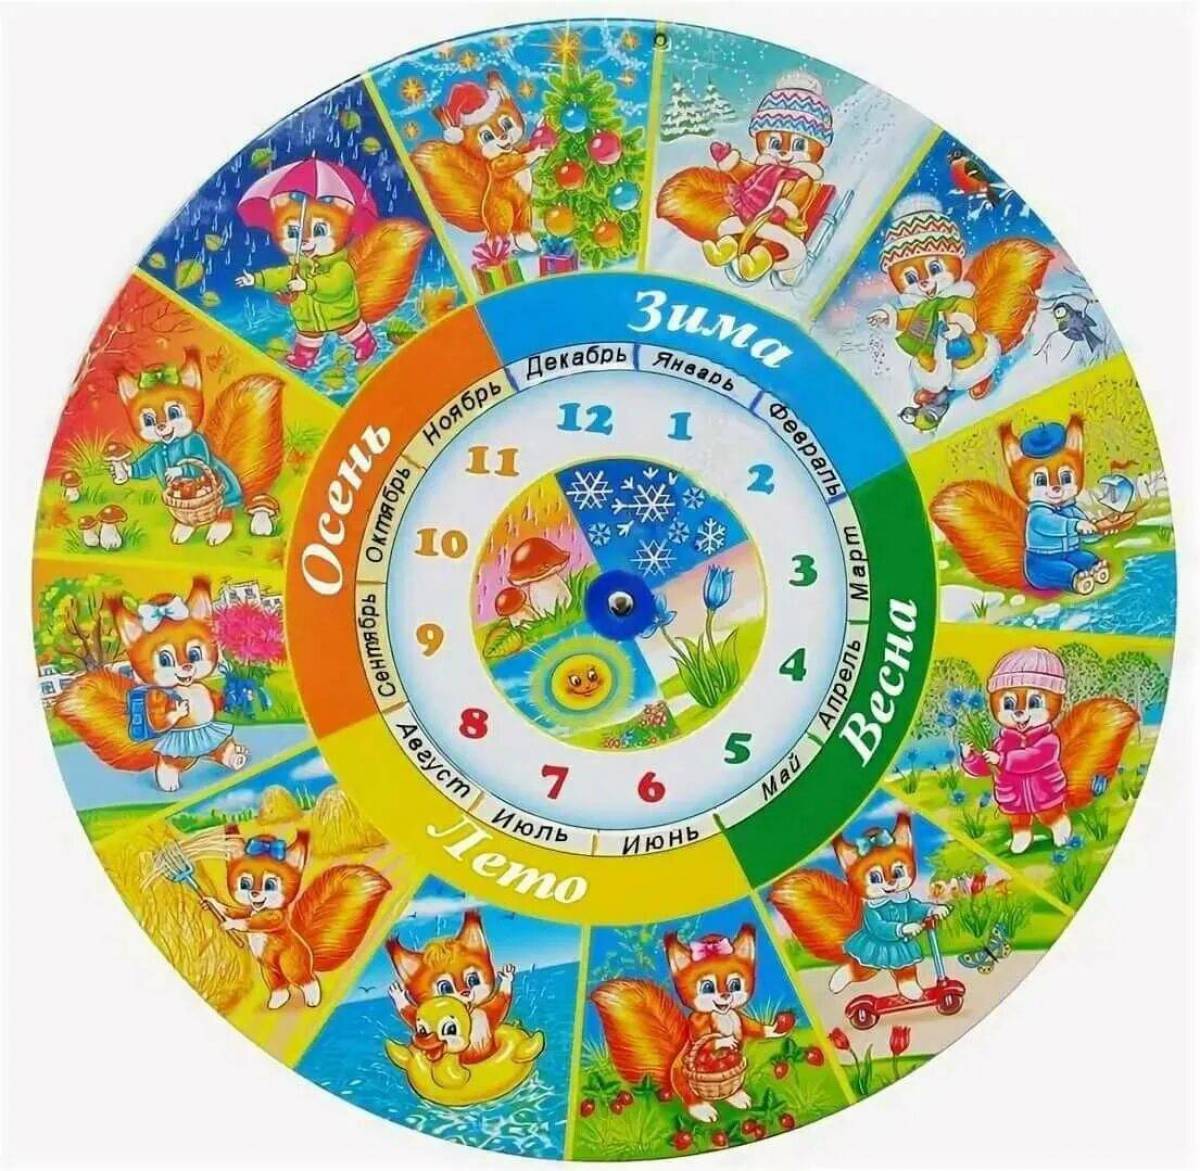 Фон дни недели. Календарь времена года. Круглый календарь для детей. Изображения времен года для детей. Календарь времен года для детского сада.